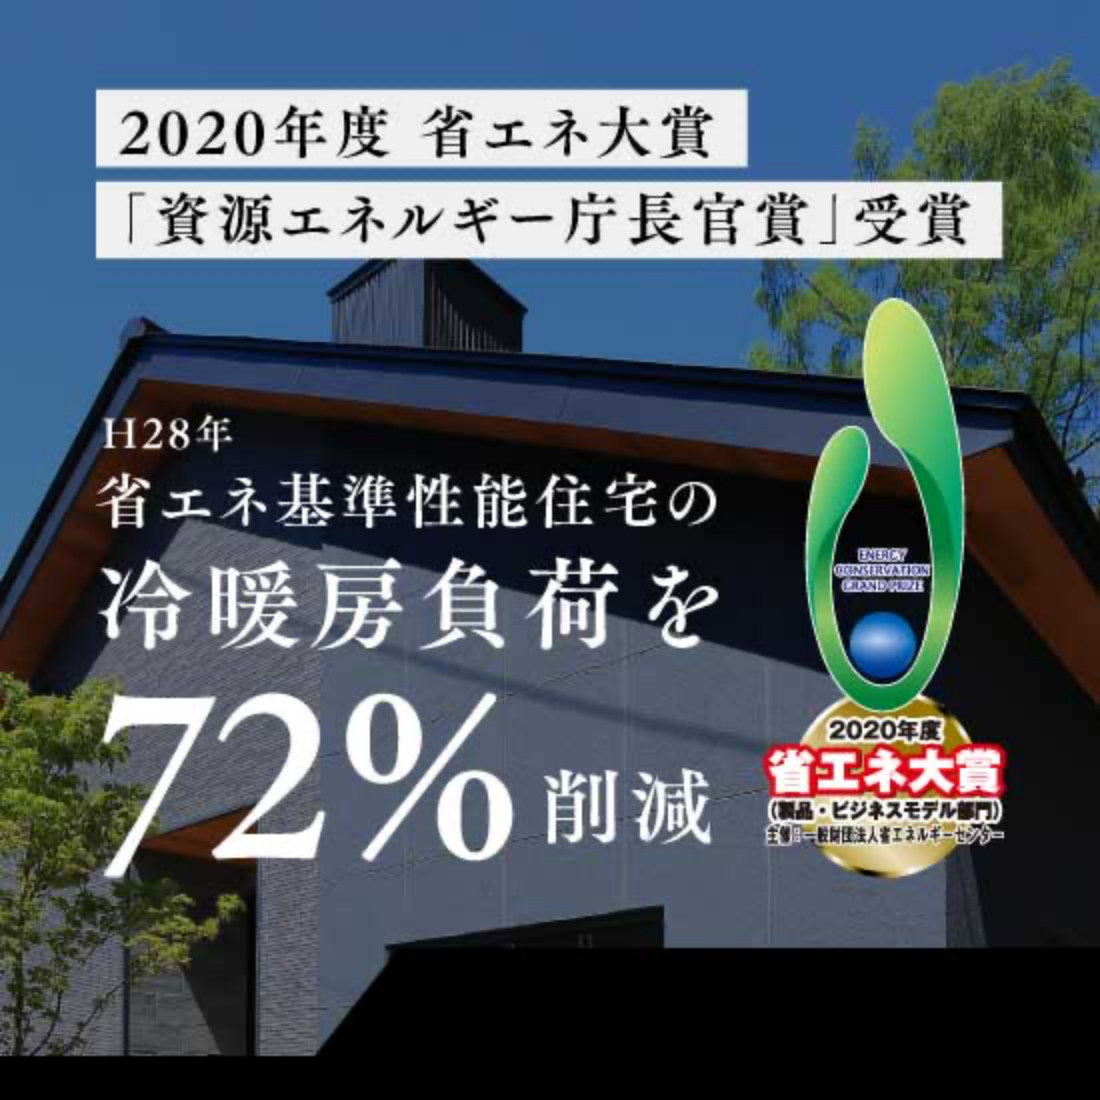 2020年度省エネ大賞 資源エネルギー庁長官賞「FB屋根パネル」